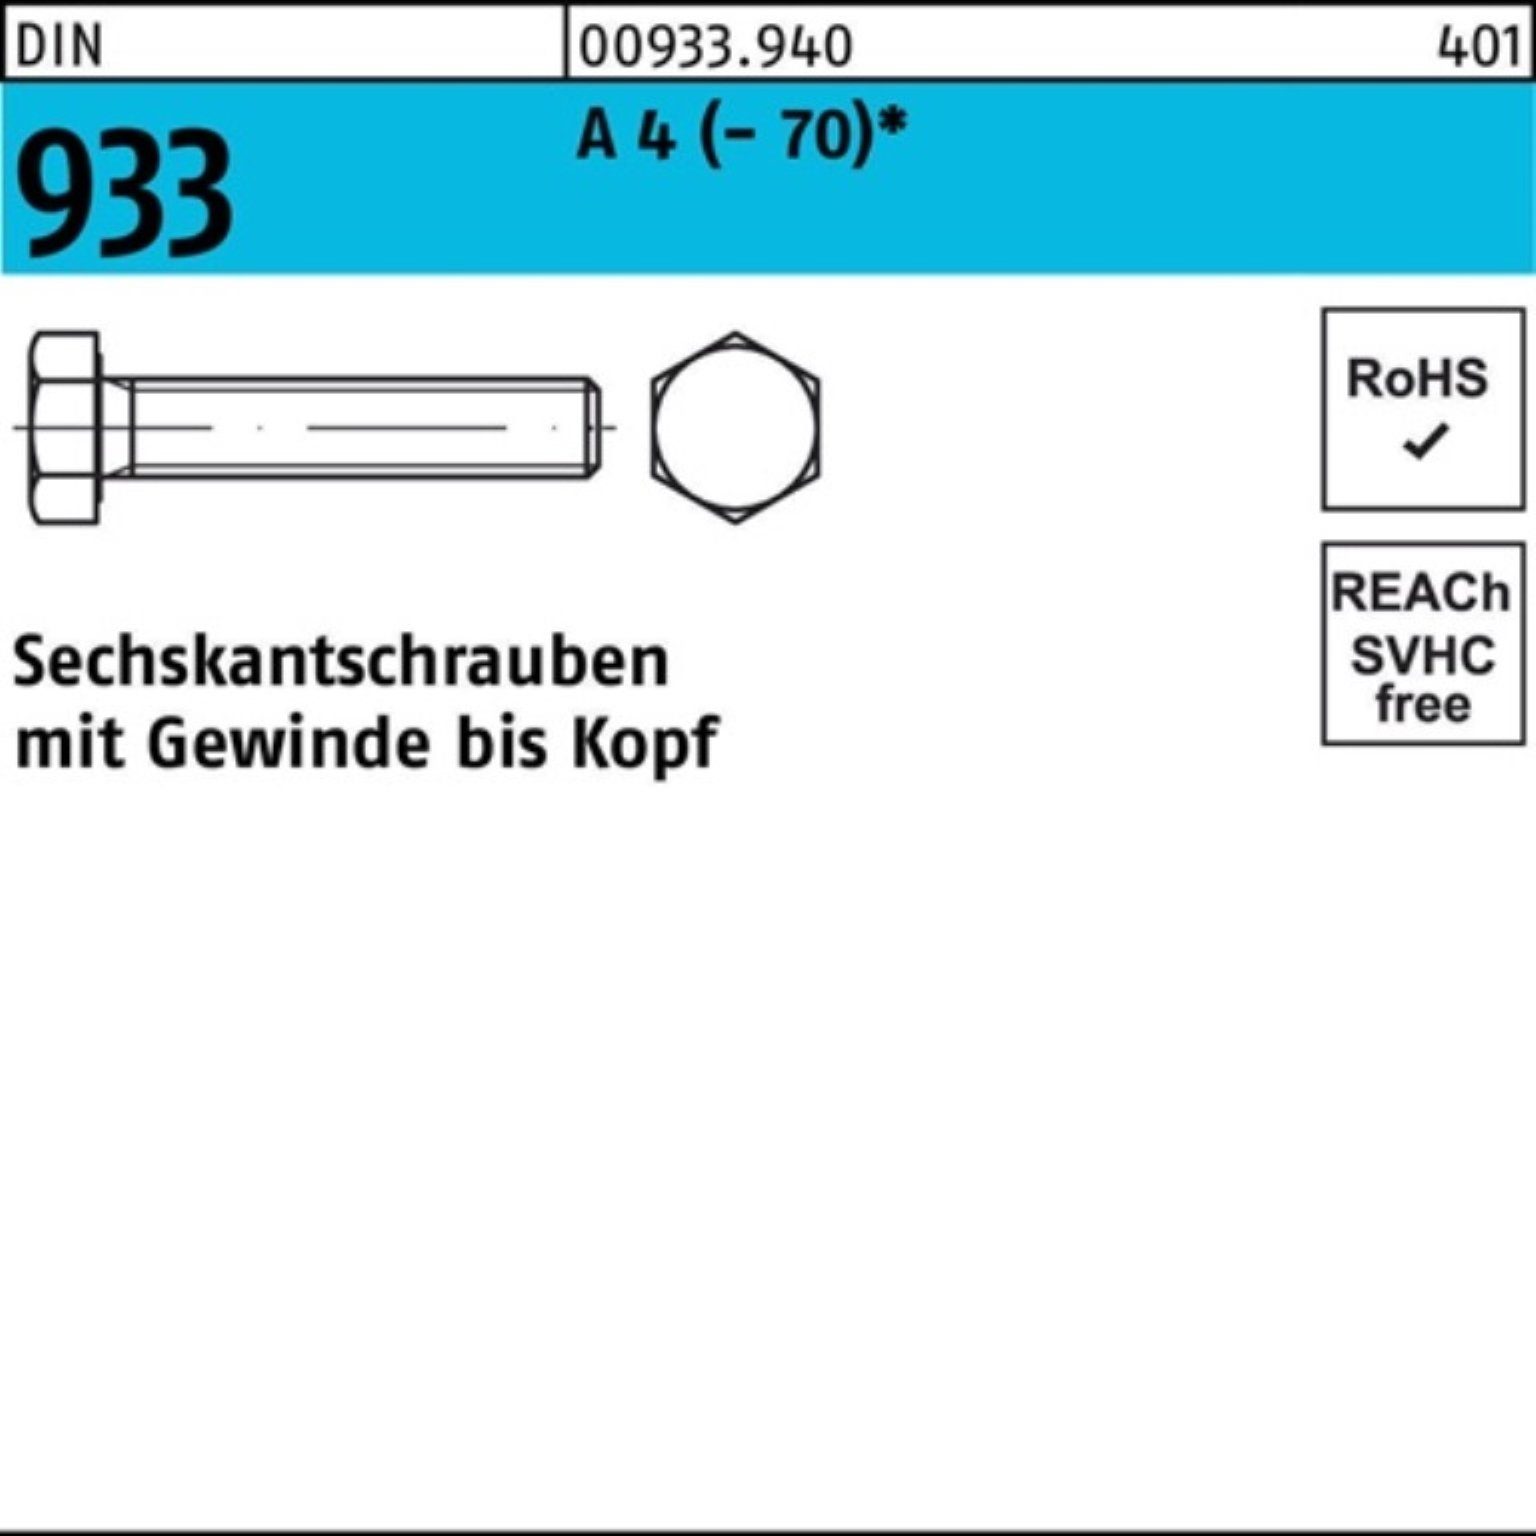 Reyher Sechskantschraube 100er VG M27x 933 DIN Stück 1 (70) A 4 DI 60 Pack Sechskantschraube